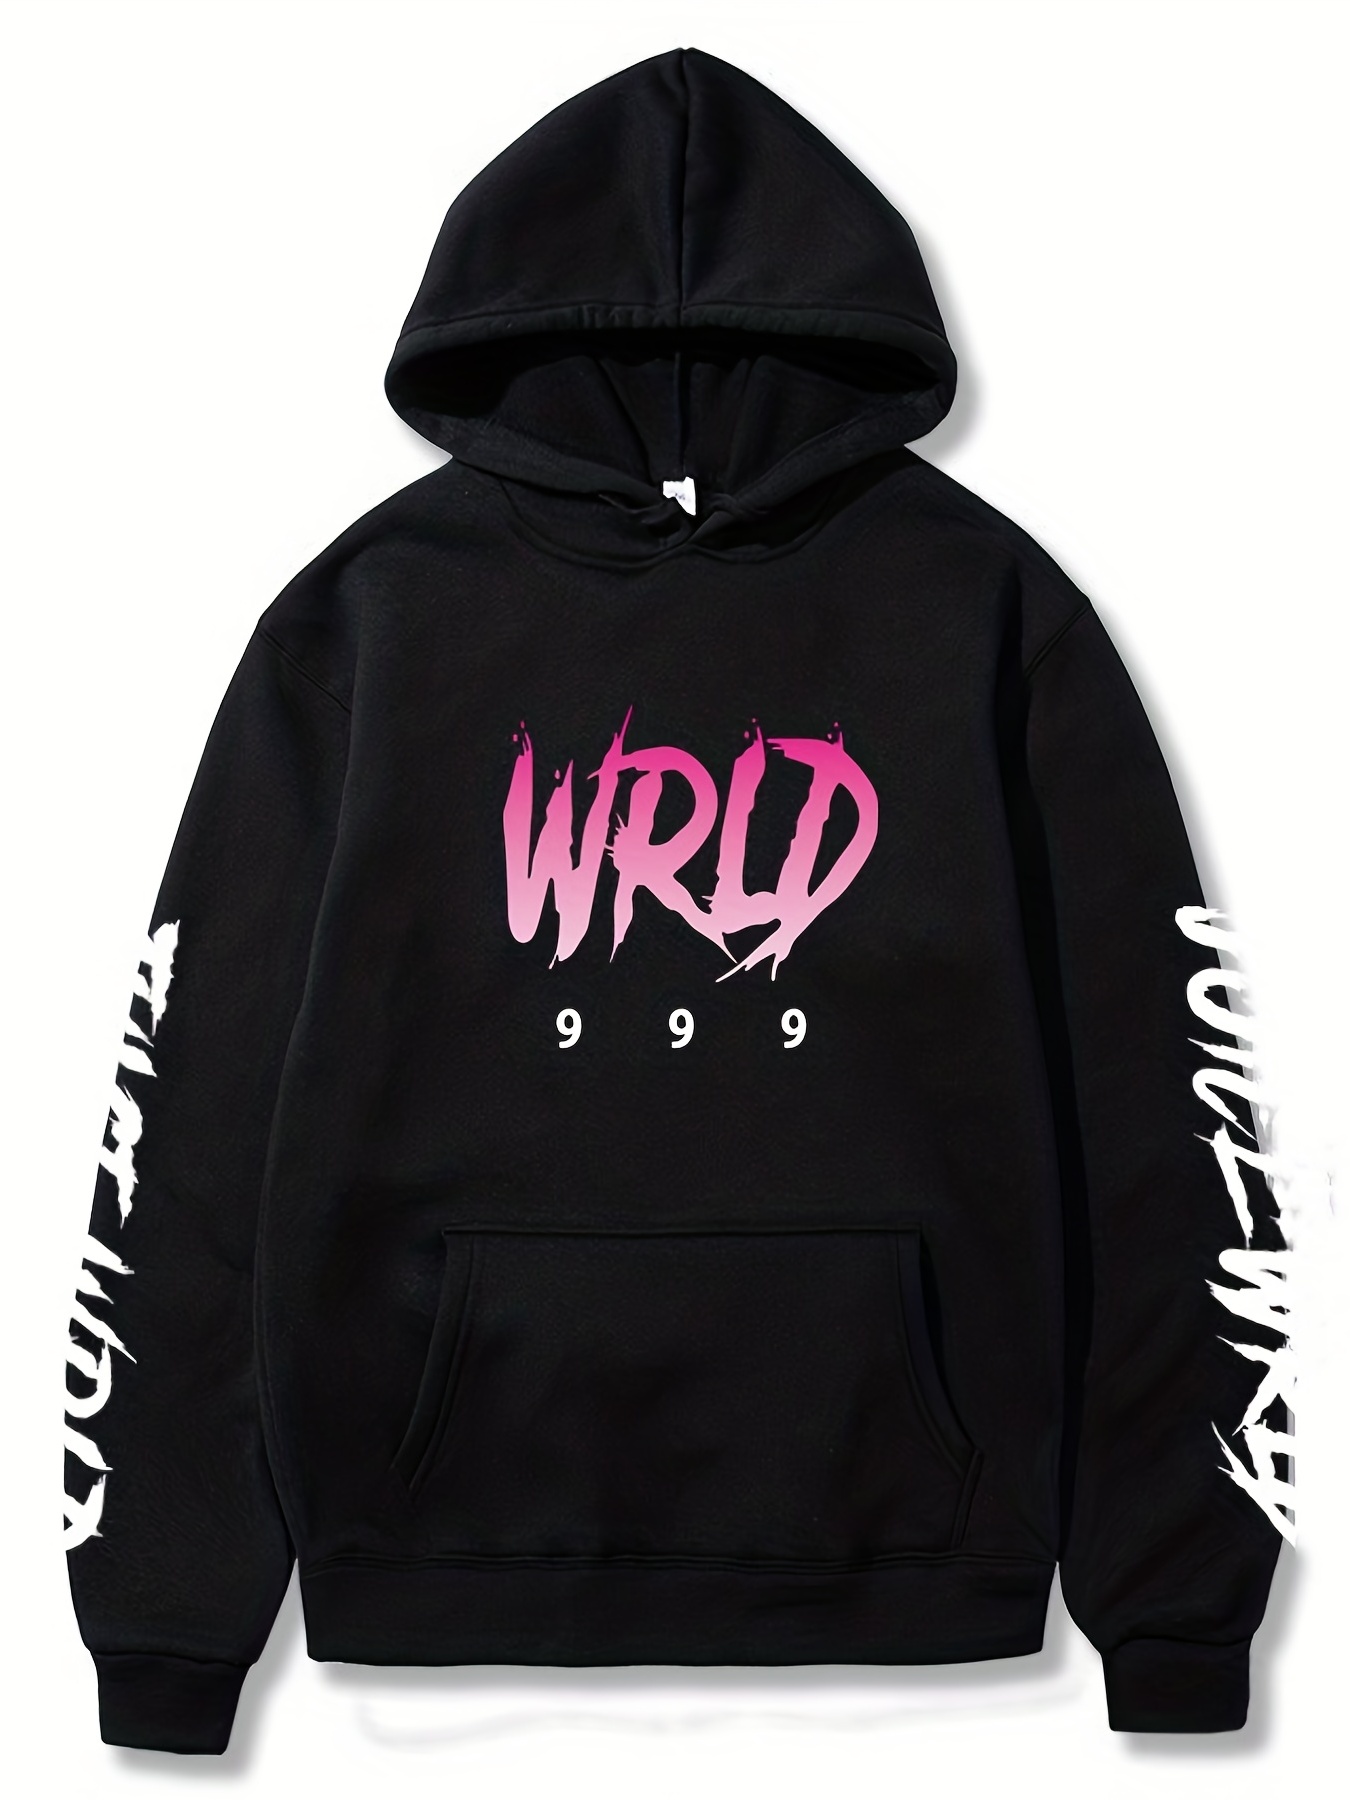 Juice Wrld 999 In My Head Merch Hoodies New Logo Women/Men Winter Hooded  Sweatshirt Long Sleeve 